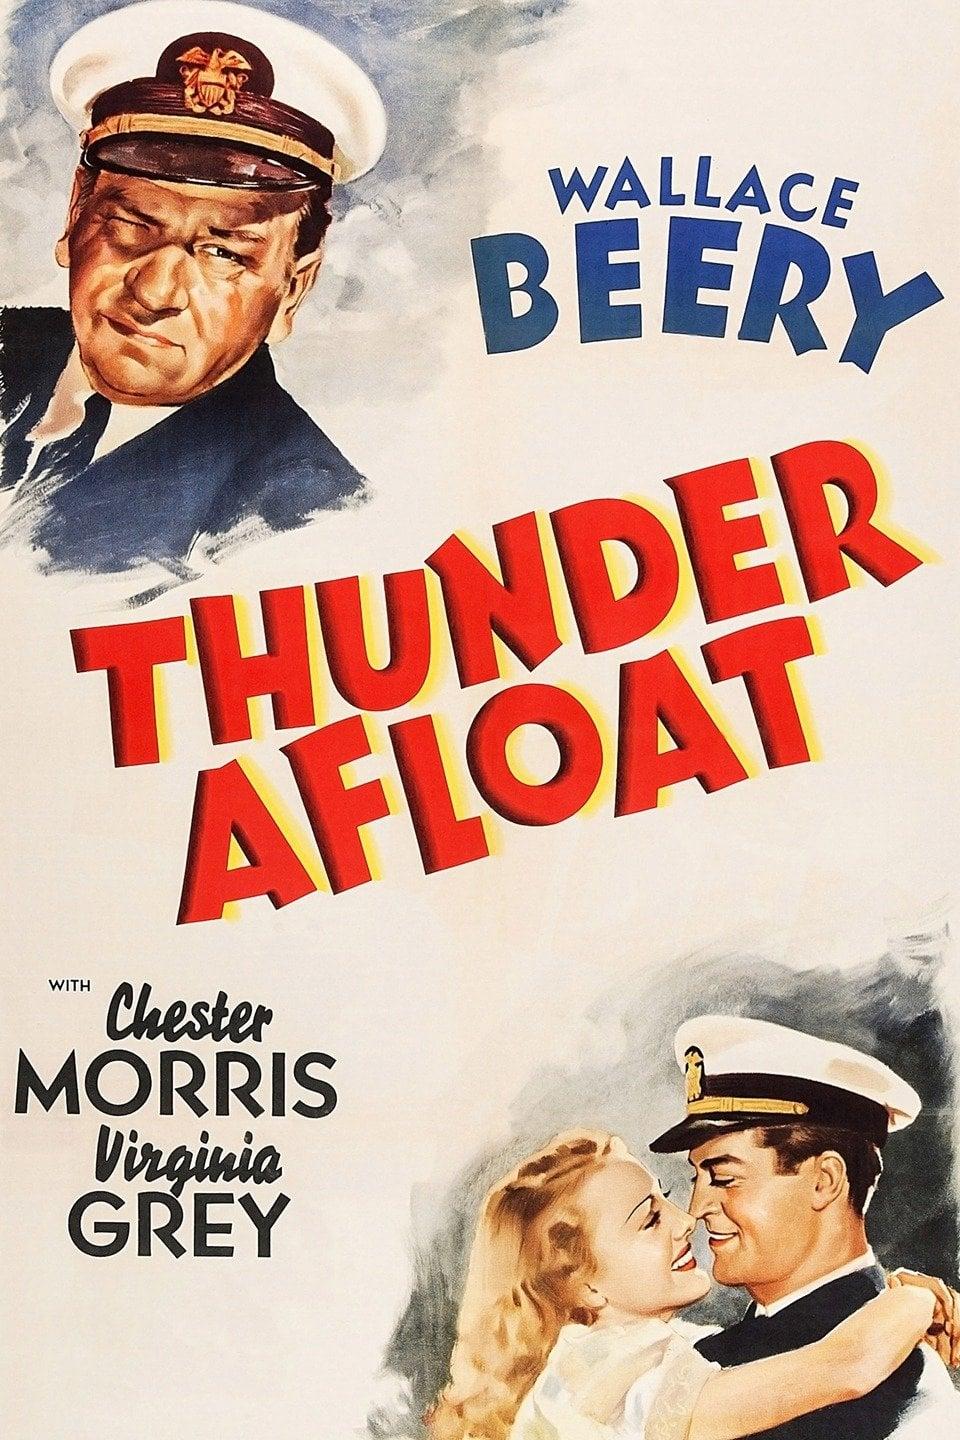 Thunder Afloat poster